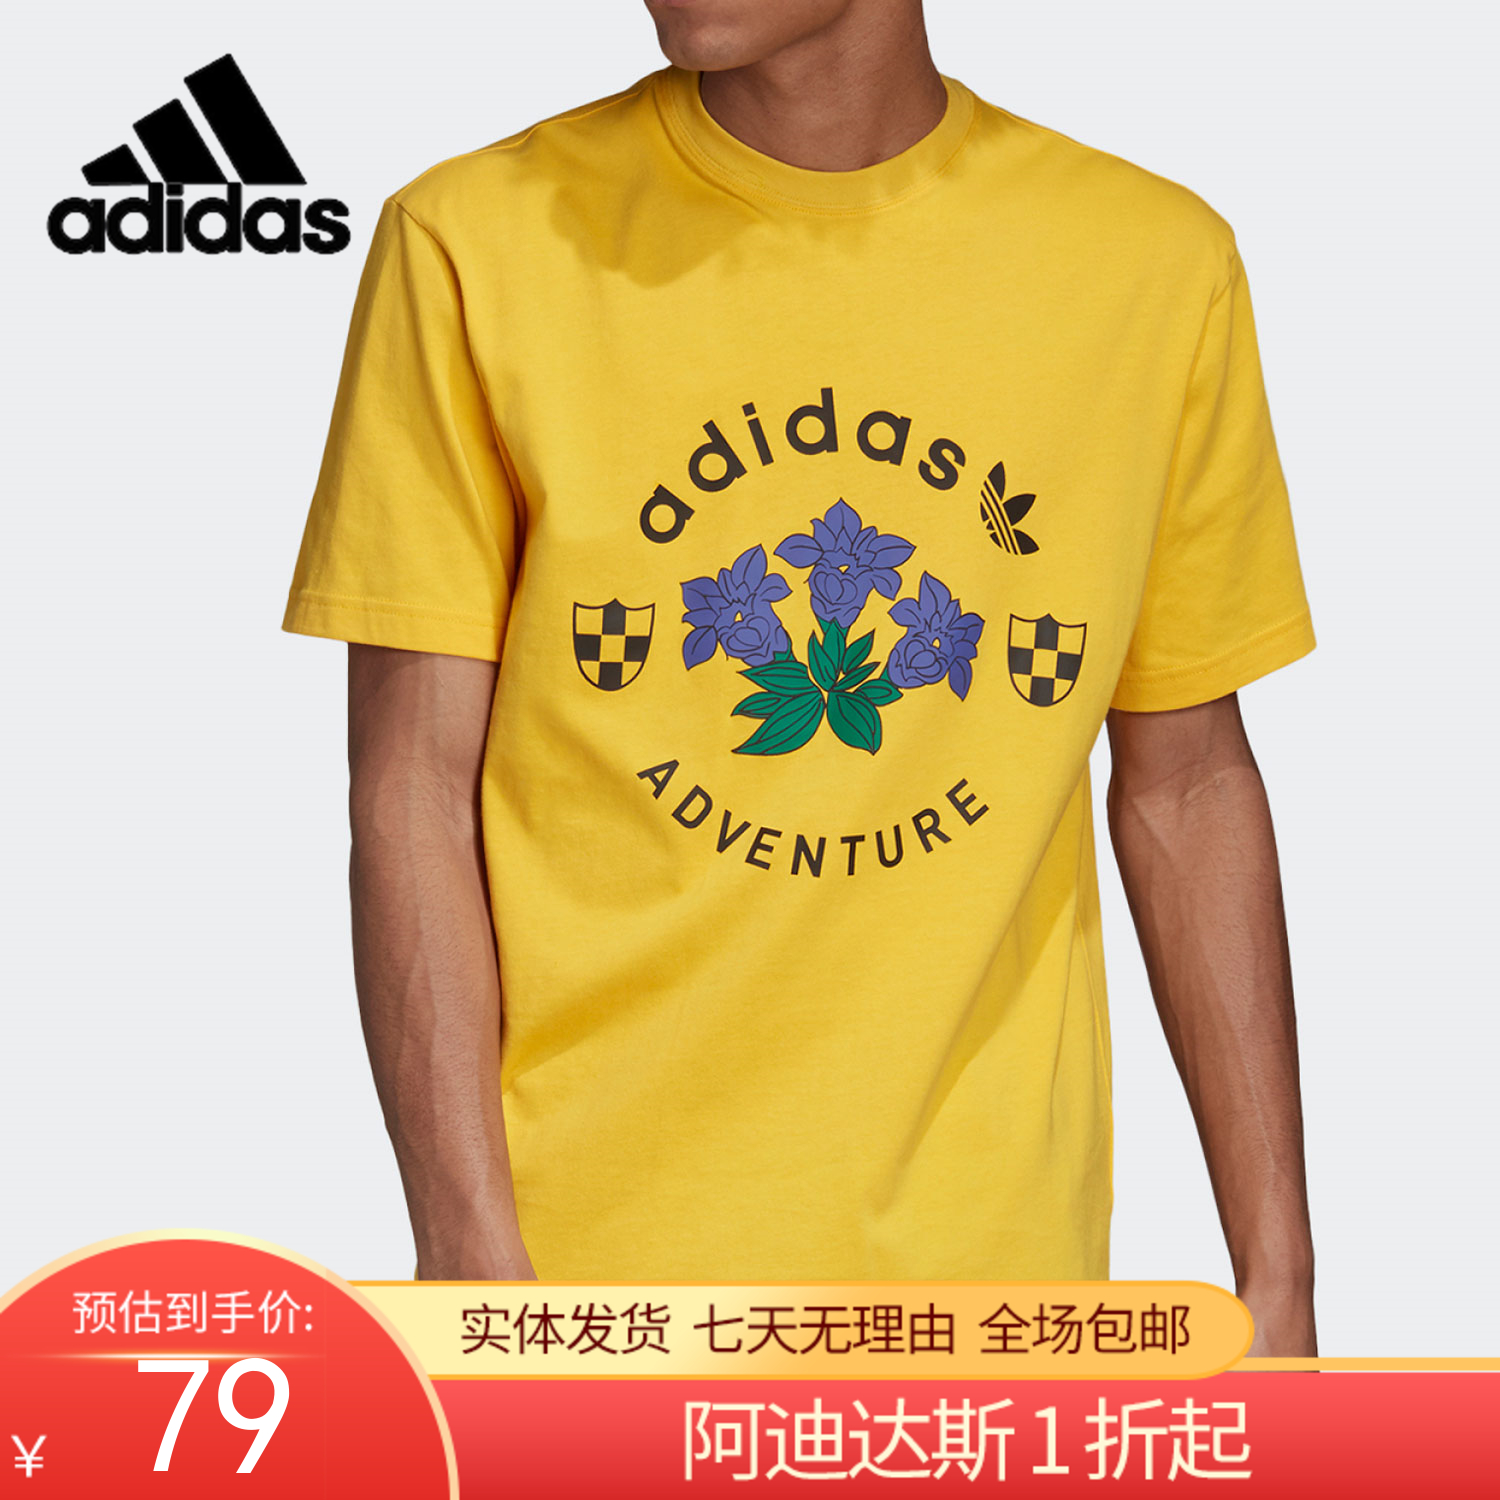 （YY）adidas/阿迪达斯  adidas三叶草男子夏季新款宽松印花上衣运动服短袖T恤衫 GD5607